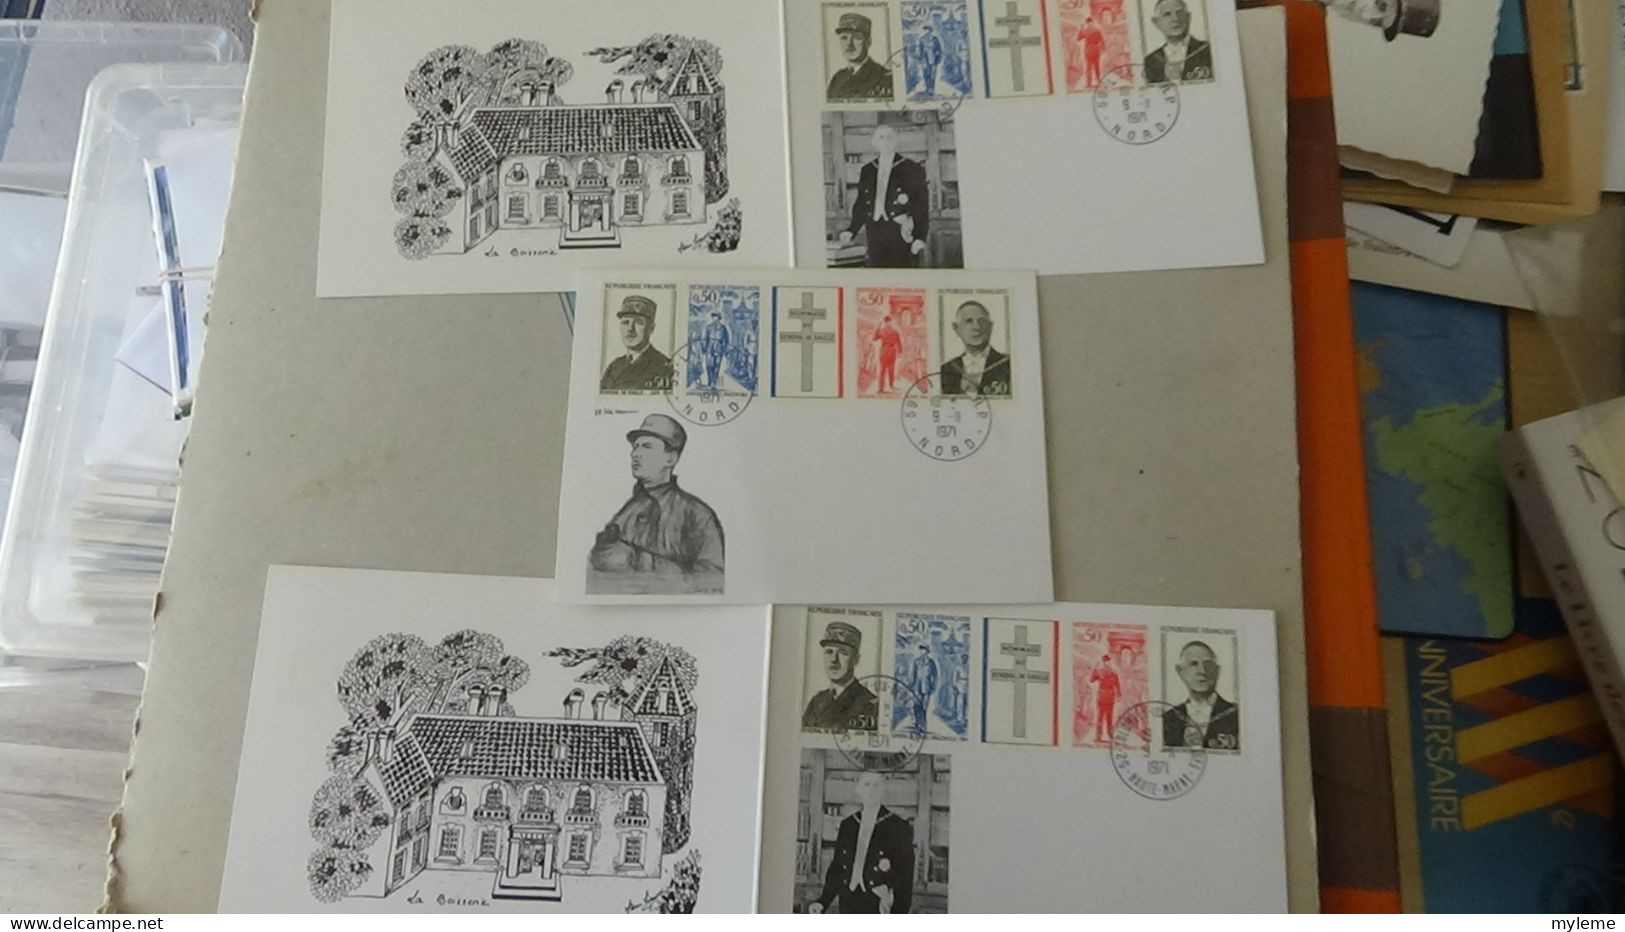 BG7 Très belle étude sur le général De Gaulle en timbres, blocs, enveloppes et documents philatéliques. A saisir !!!